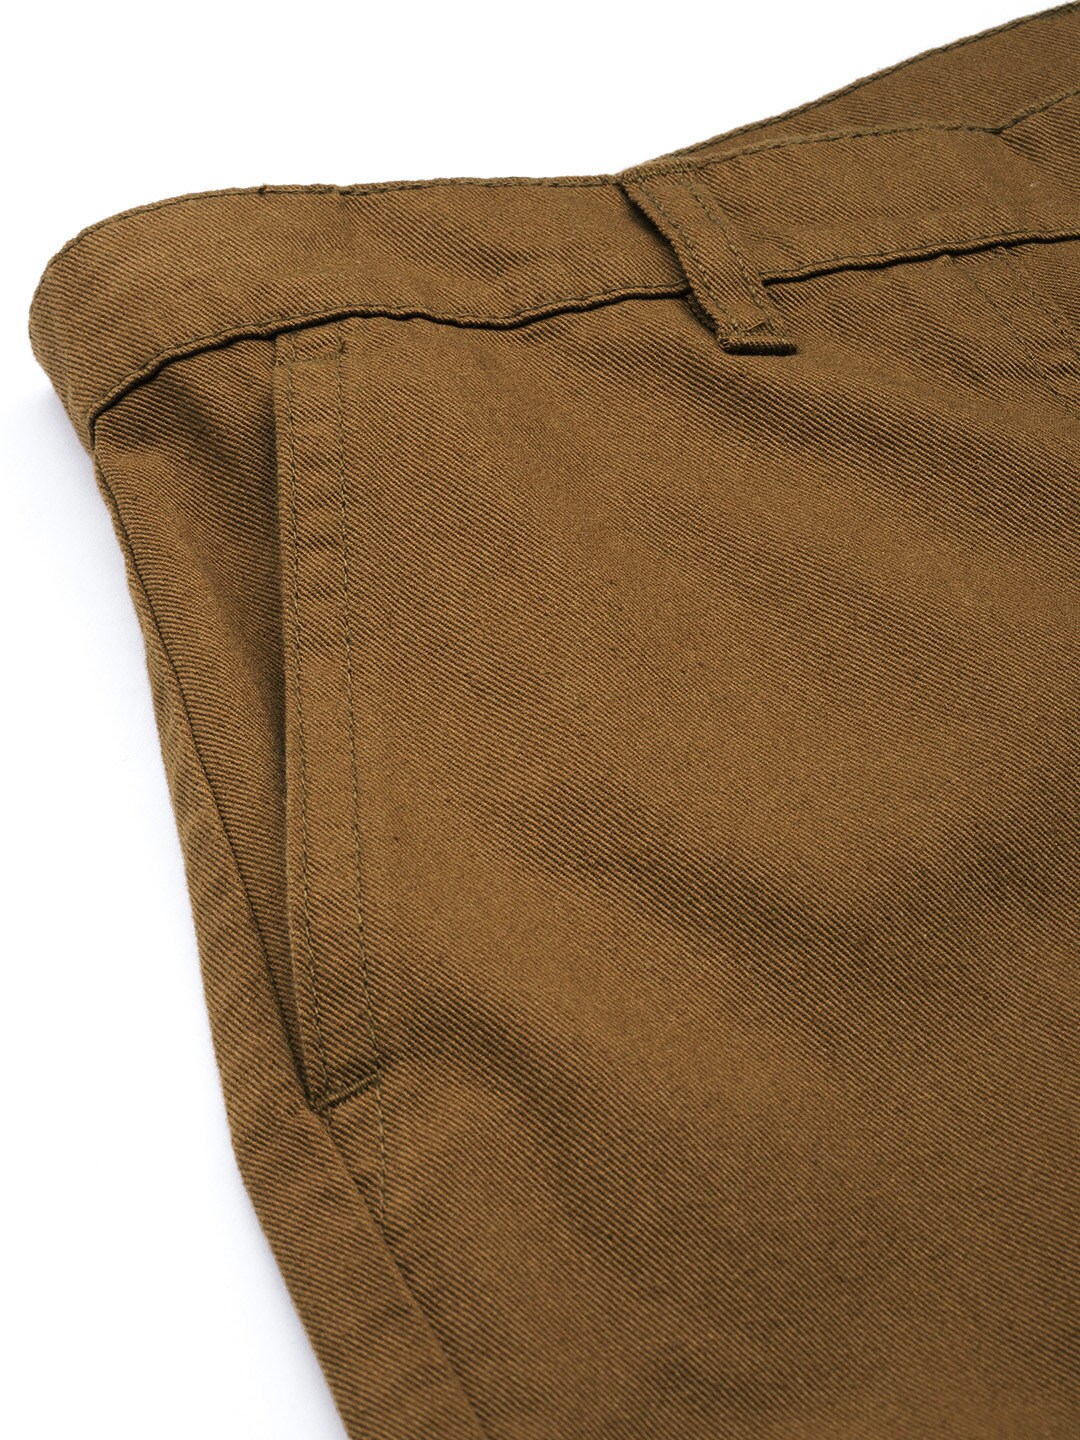 Shop Men Cargo Pants Online.